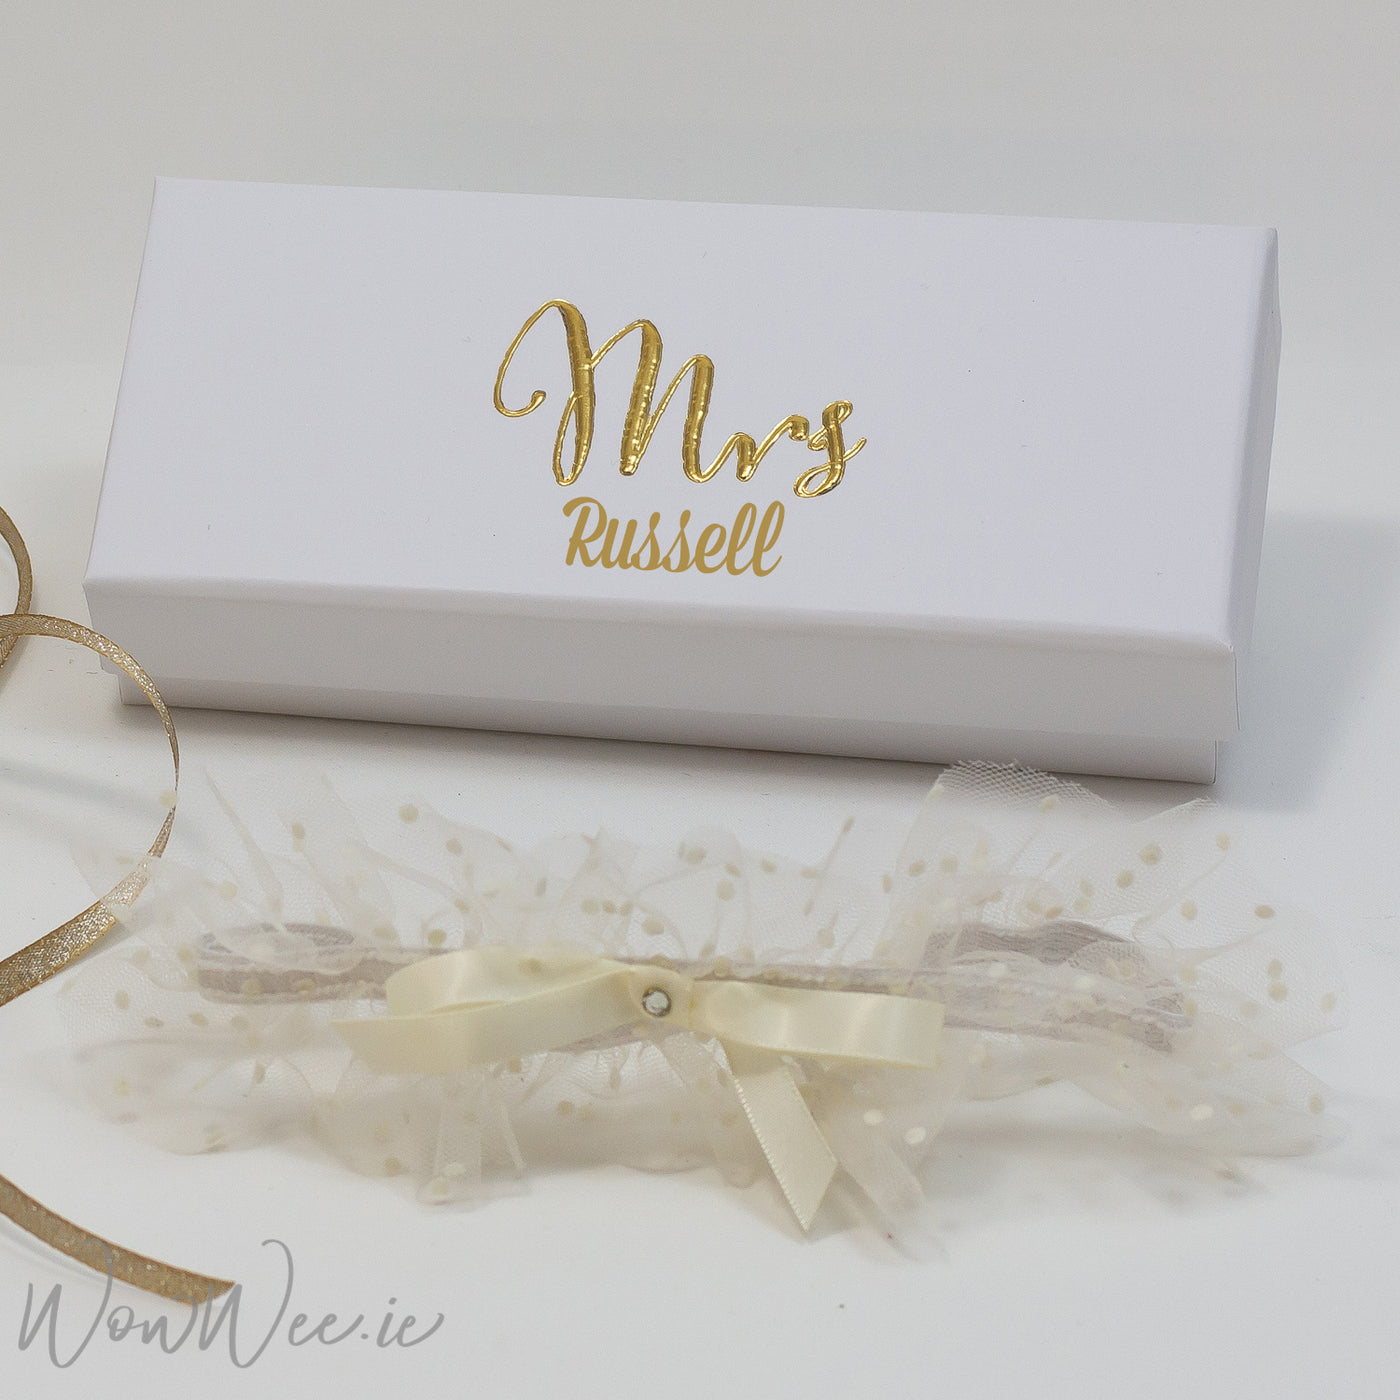 Wedding Garter - Mrs. in Personalised Presentation Box - WowWee.ie Personalised Gifts